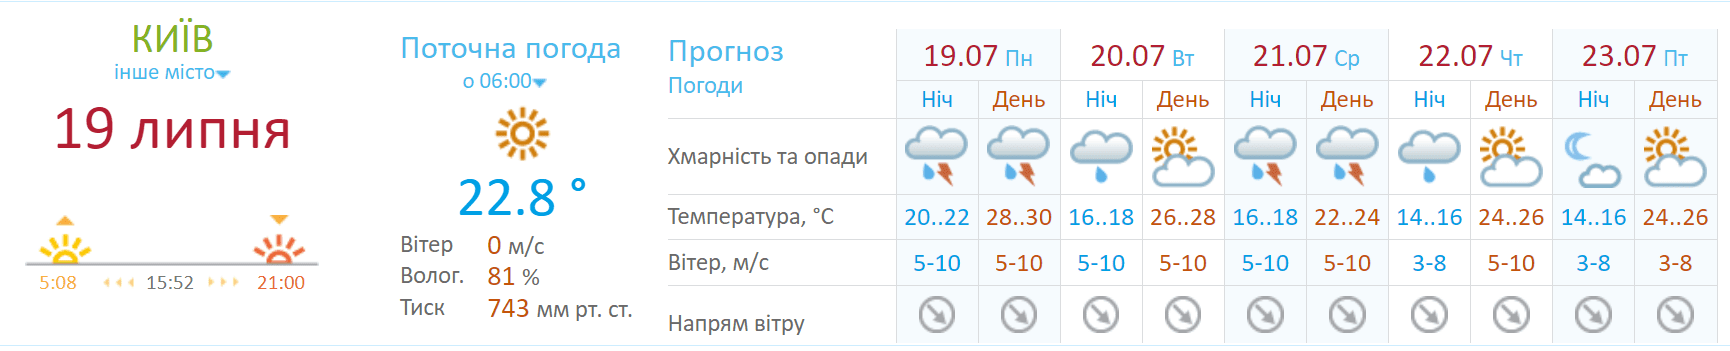 Прогноз погоды в Киеве на неделю/Укргидрометцентр